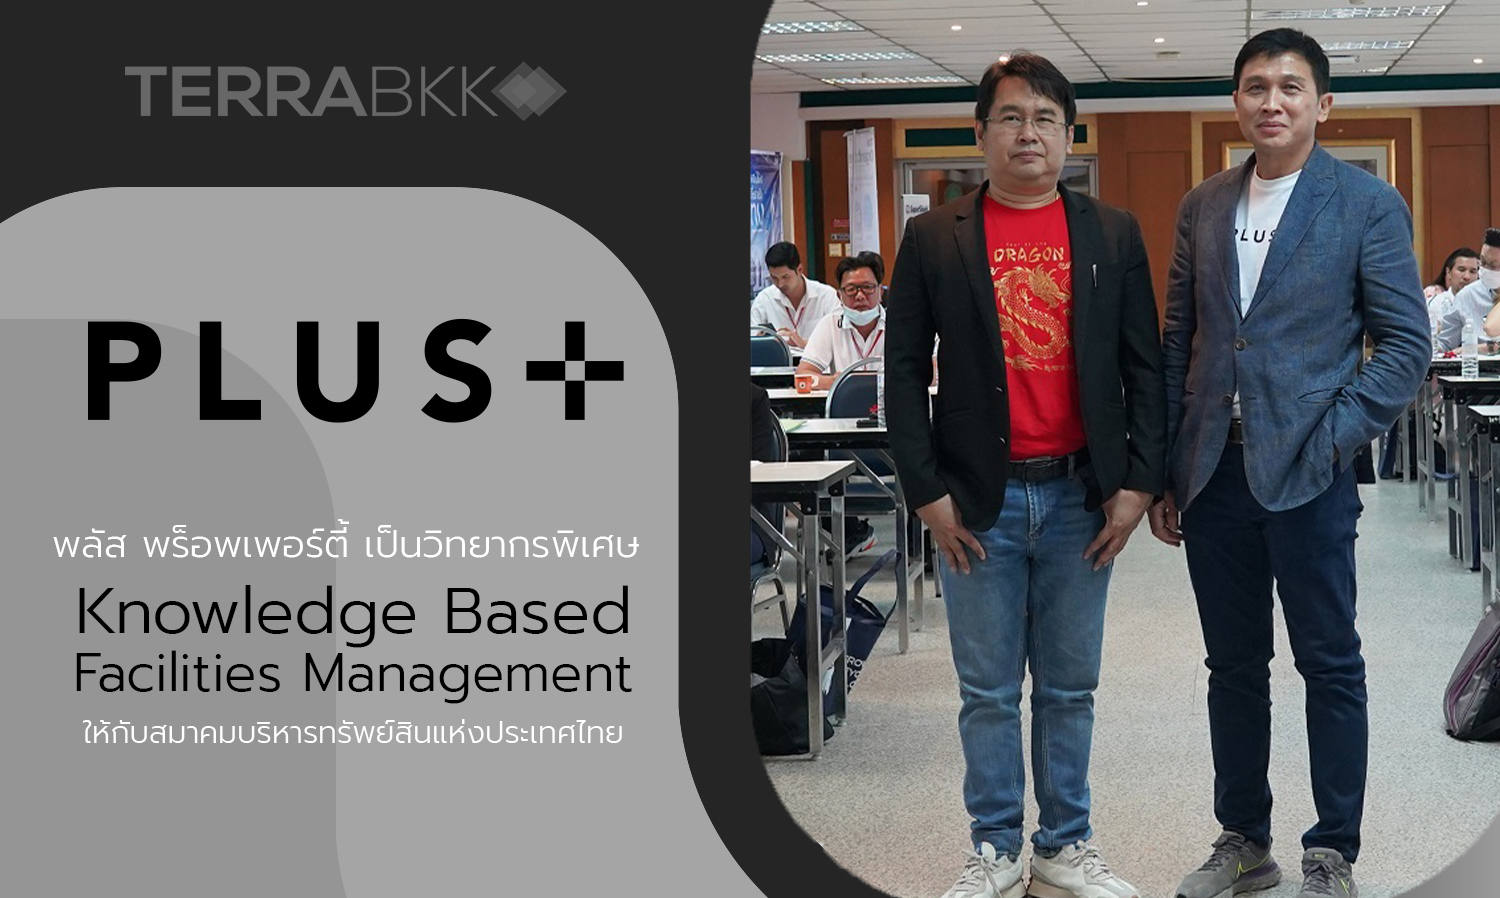 พลัส พร็อพเพอร์ตี้ เป็นวิทยากรพิเศษ  Knowledge Based Facilities Management  ให้กับสมาคมบริหารทรัพย์สินแห่งประเทศไทย